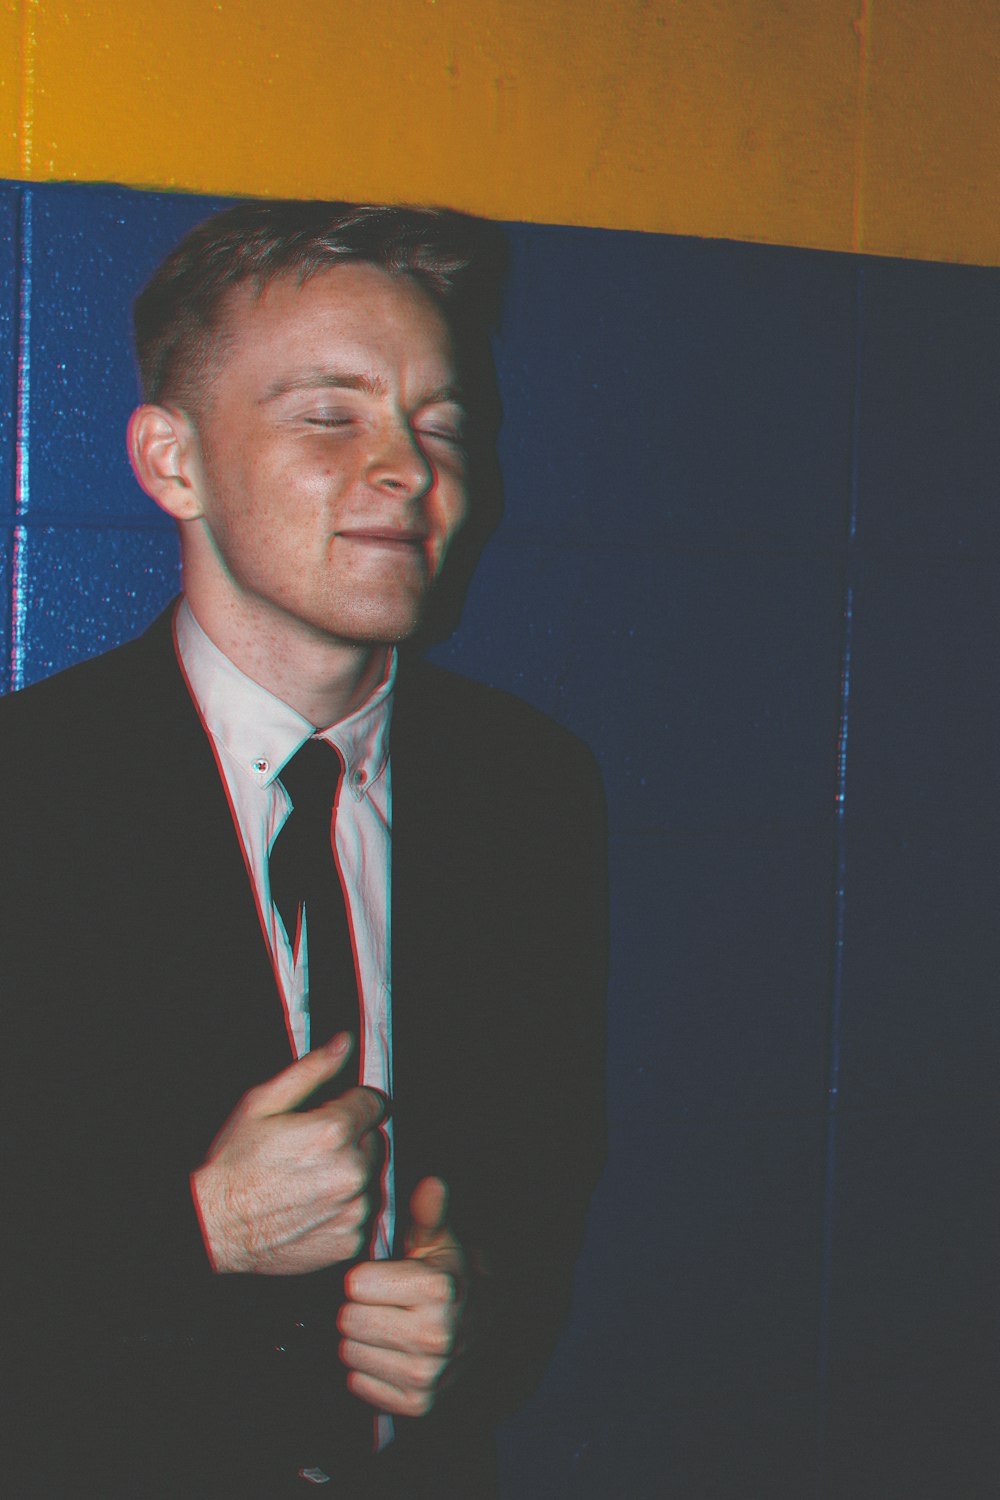 man wearing suit beside wall